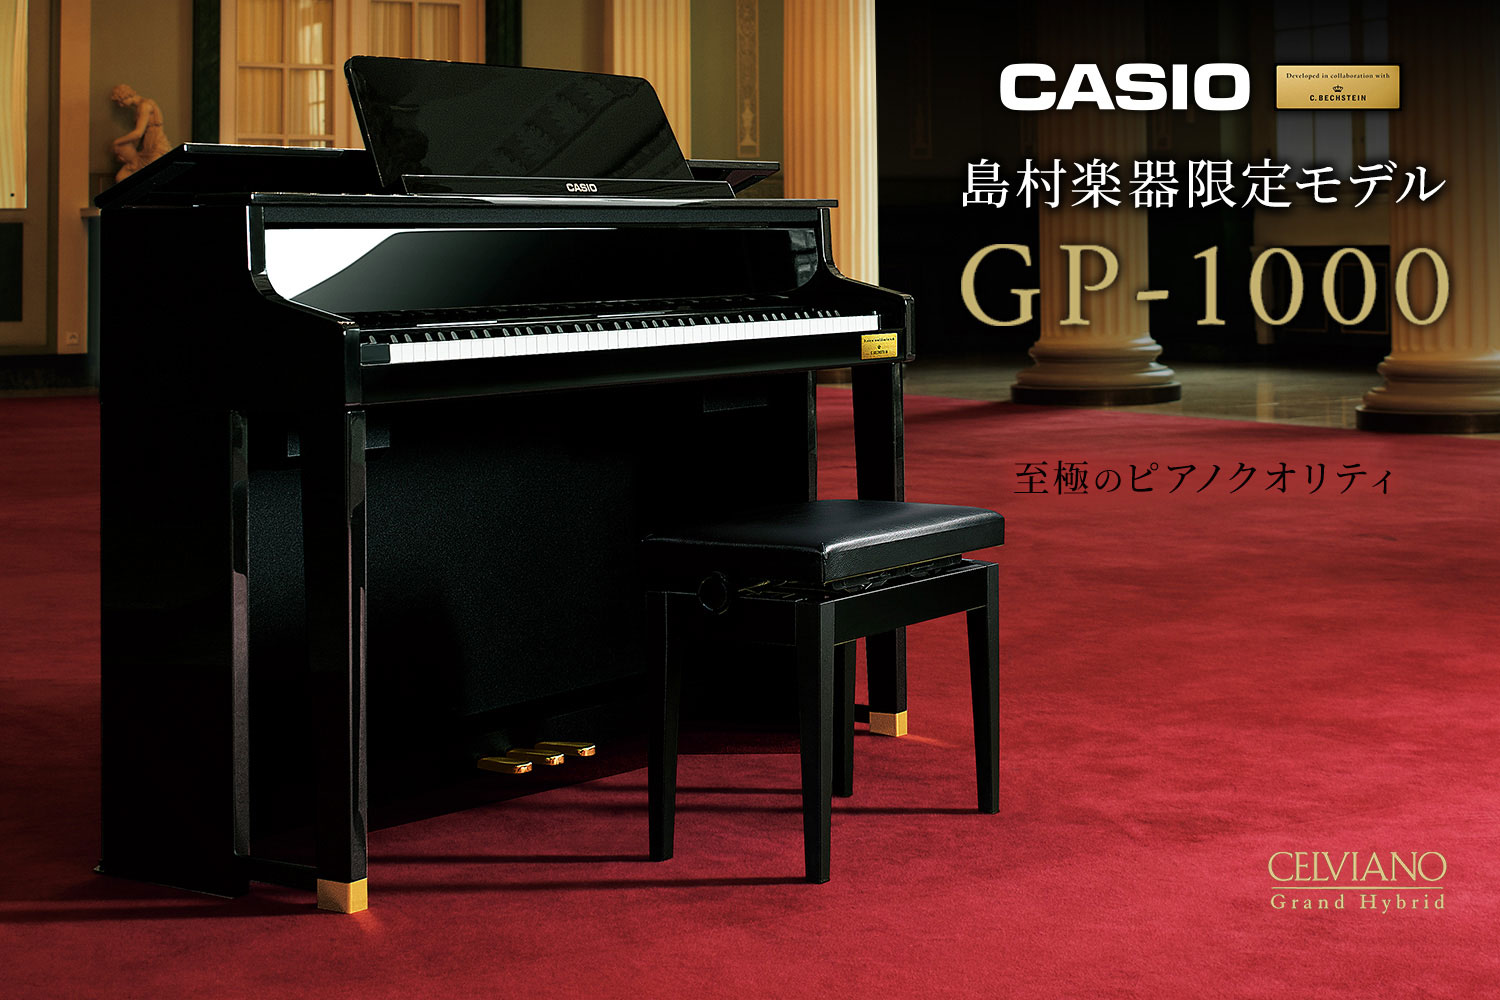 GP-1000<br />
世界有数の歴史あるピアノメーカーC.ベヒシュタイン社と共同開発した音や鍵盤を搭載し、2015年の発売以降国内外のピアニストたちから好評を博した注目のモデル。<br />
￥434,500